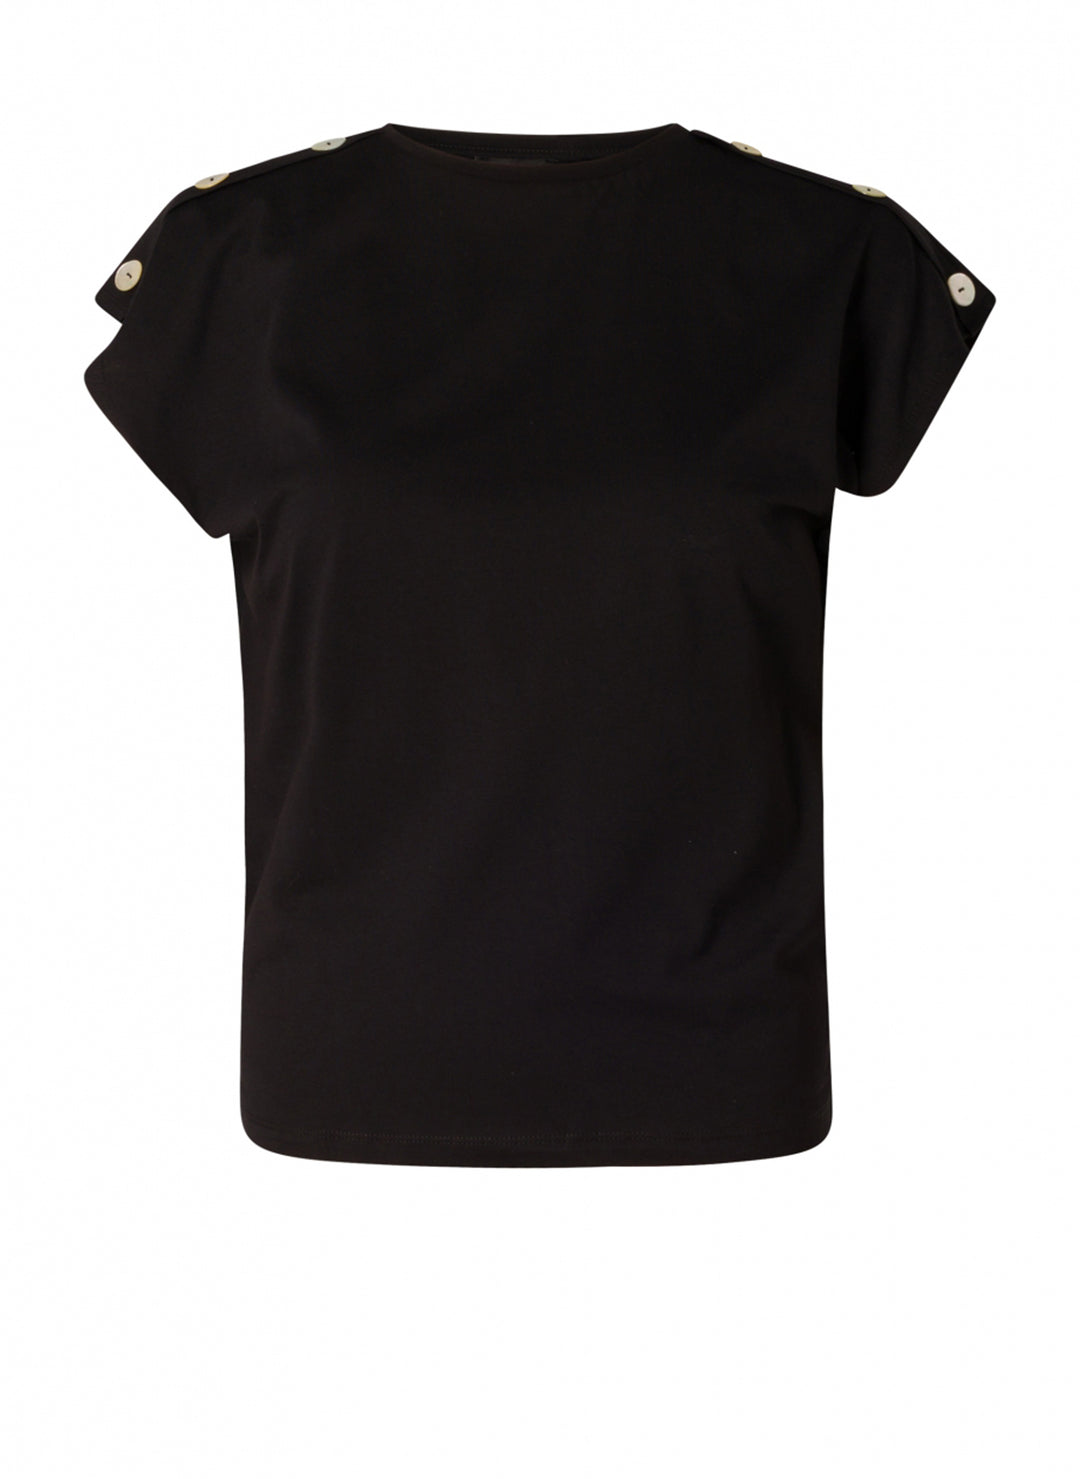 zwart t-shirt van katoen - yesta - - grote maten - dameskleding - kledingwinkel - herent - leuven